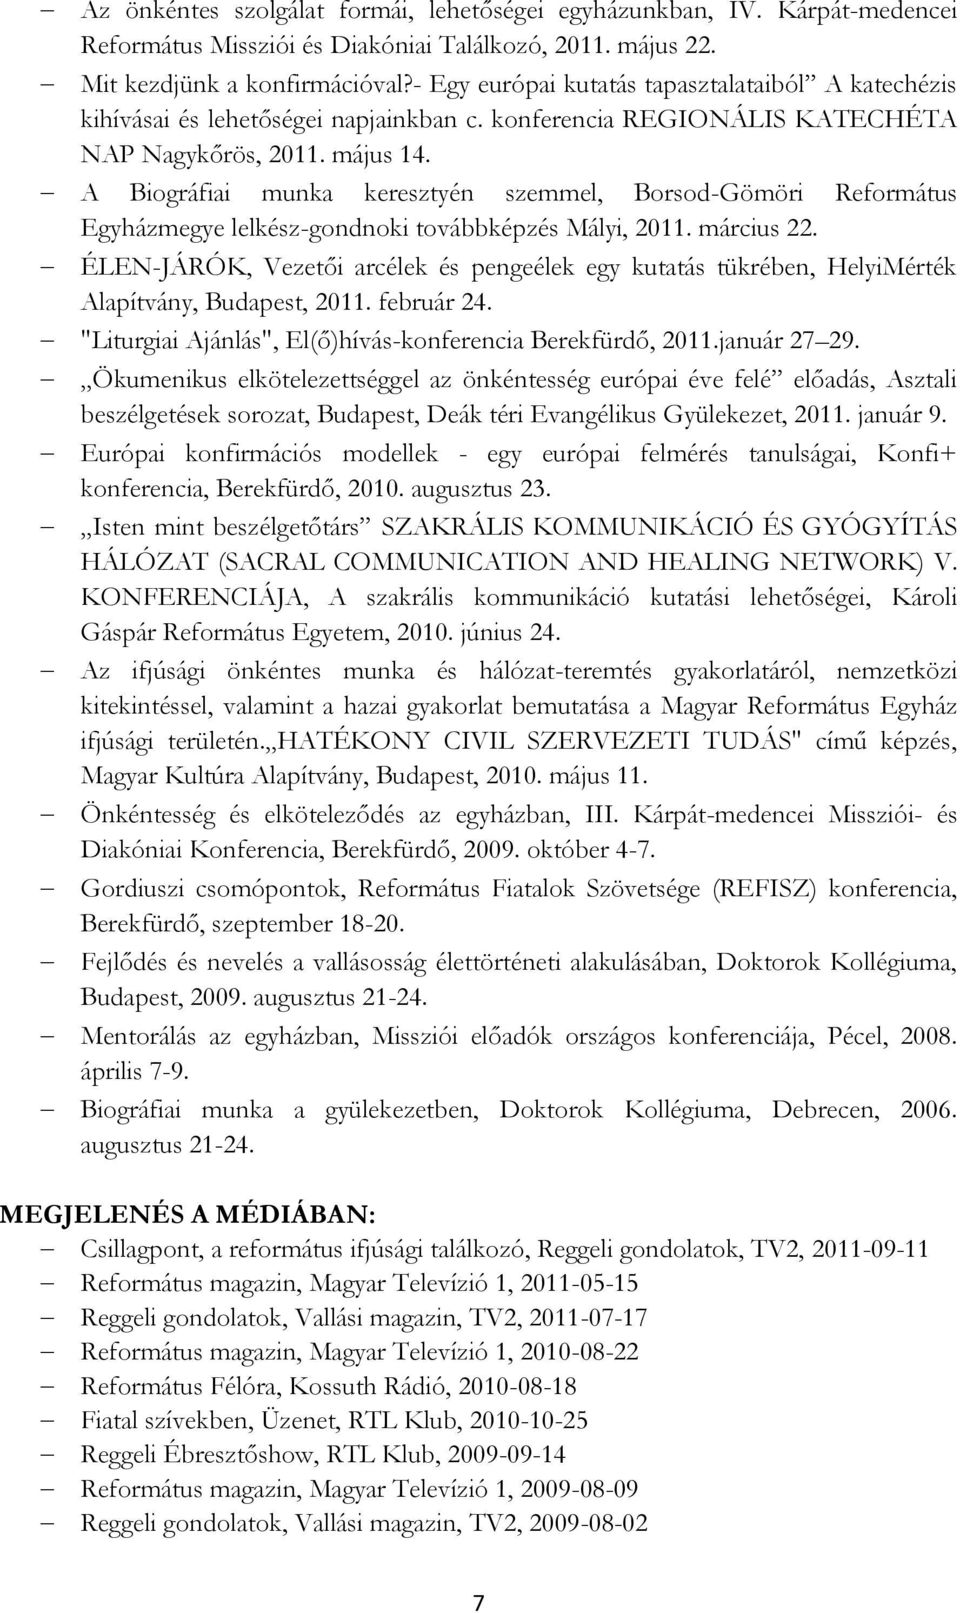 A Biográfiai munka keresztyén szemmel, Borsod-Gömöri Református Egyházmegye lelkész-gondnoki továbbképzés Mályi, 2011. március 22.